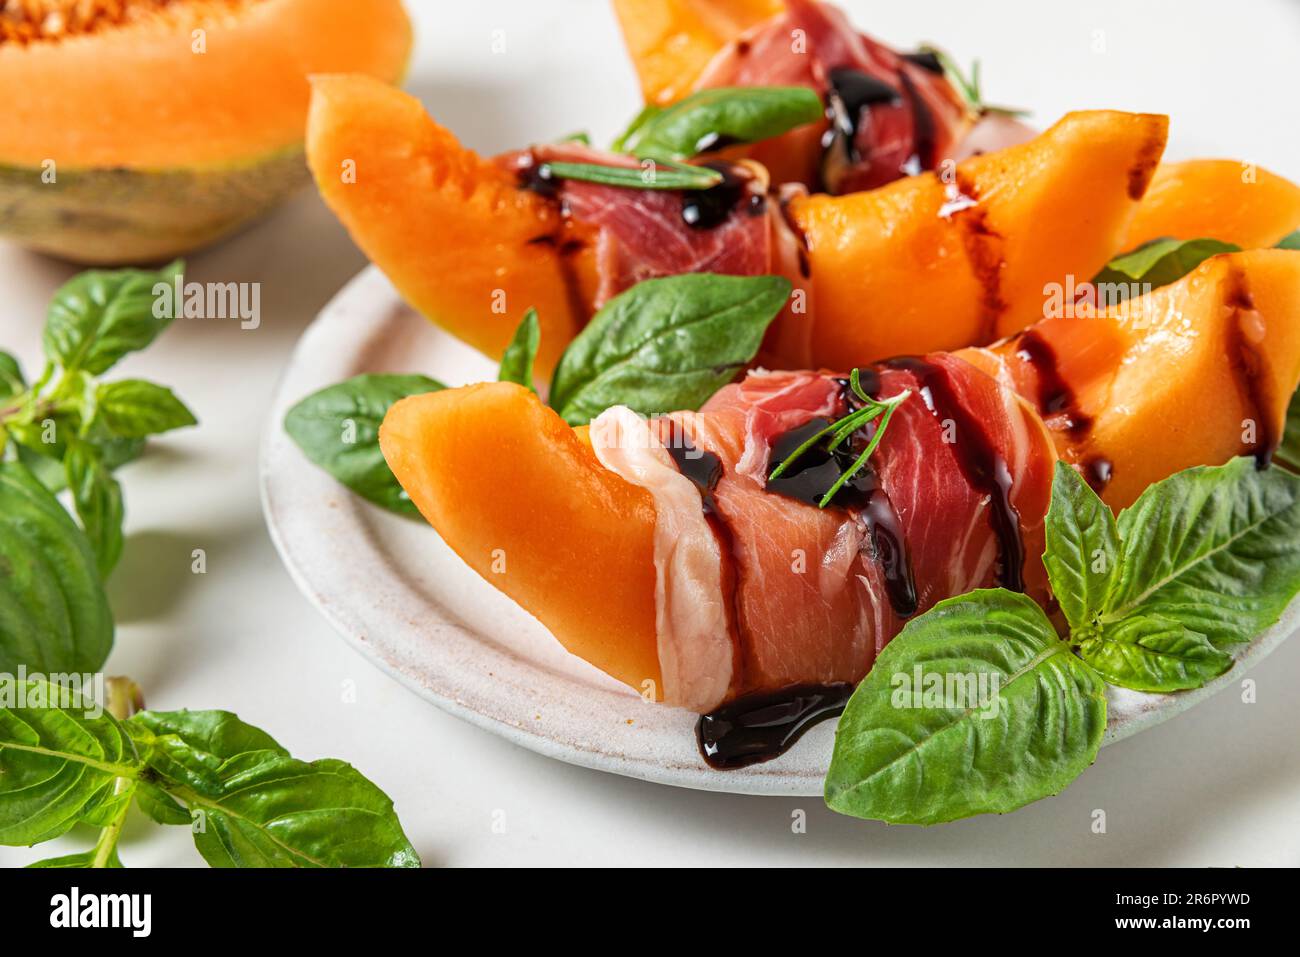 Prosciutto con fettine di melone cantaloupe, salsa all'aceto balsamico e basilico in un piatto su fondo bianco Foto Stock